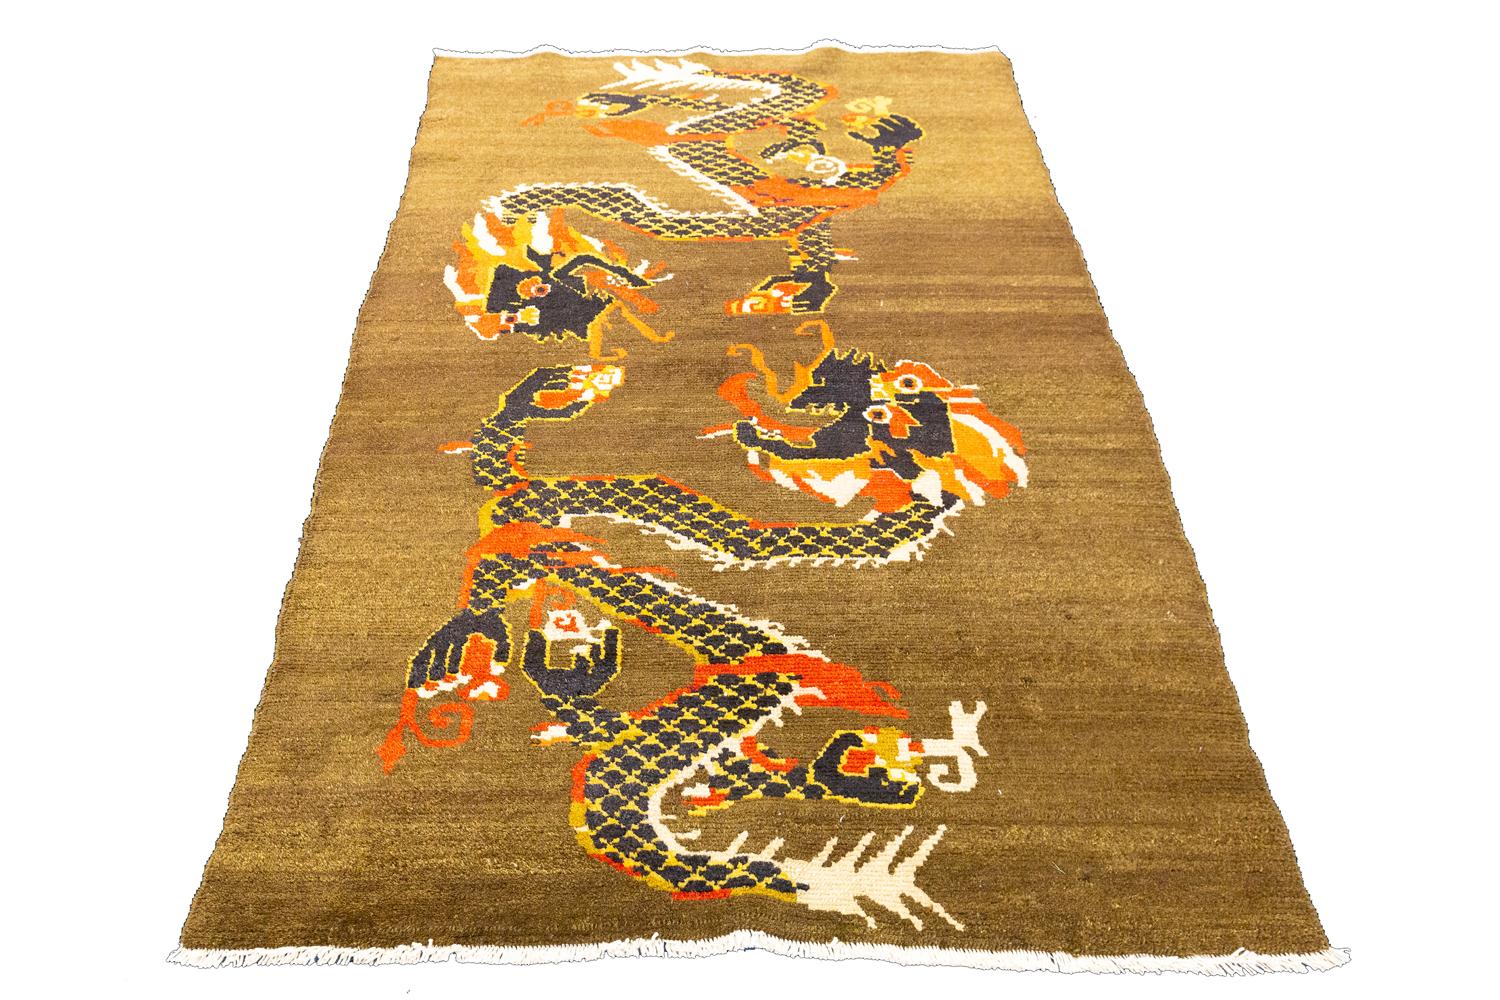 Ce tapis en forme de dragon tibétain est un ajout magnifique et unique à votre intérieur. Le design complexe en laine nouée à la main présente deux dragons centraux sur un fond minimaliste dans les tons foncés de vert. Idéal pour ajouter une touche